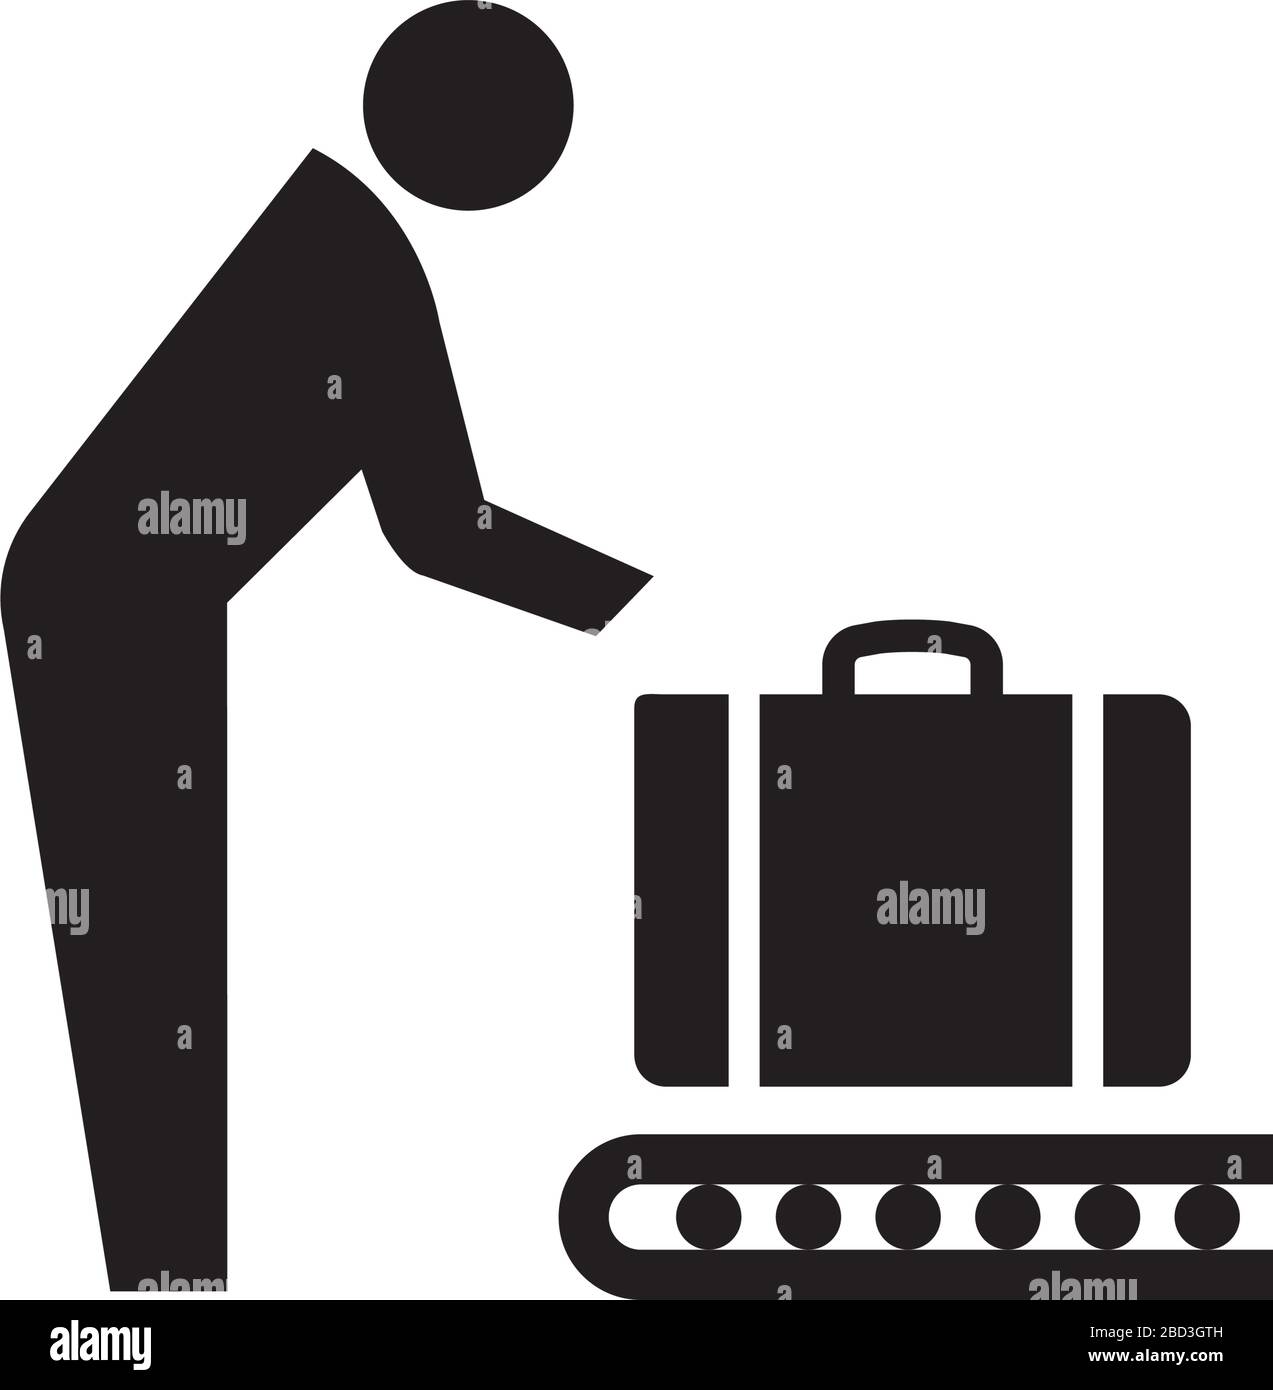 baggage claim icon / public information symbol Stock Vector